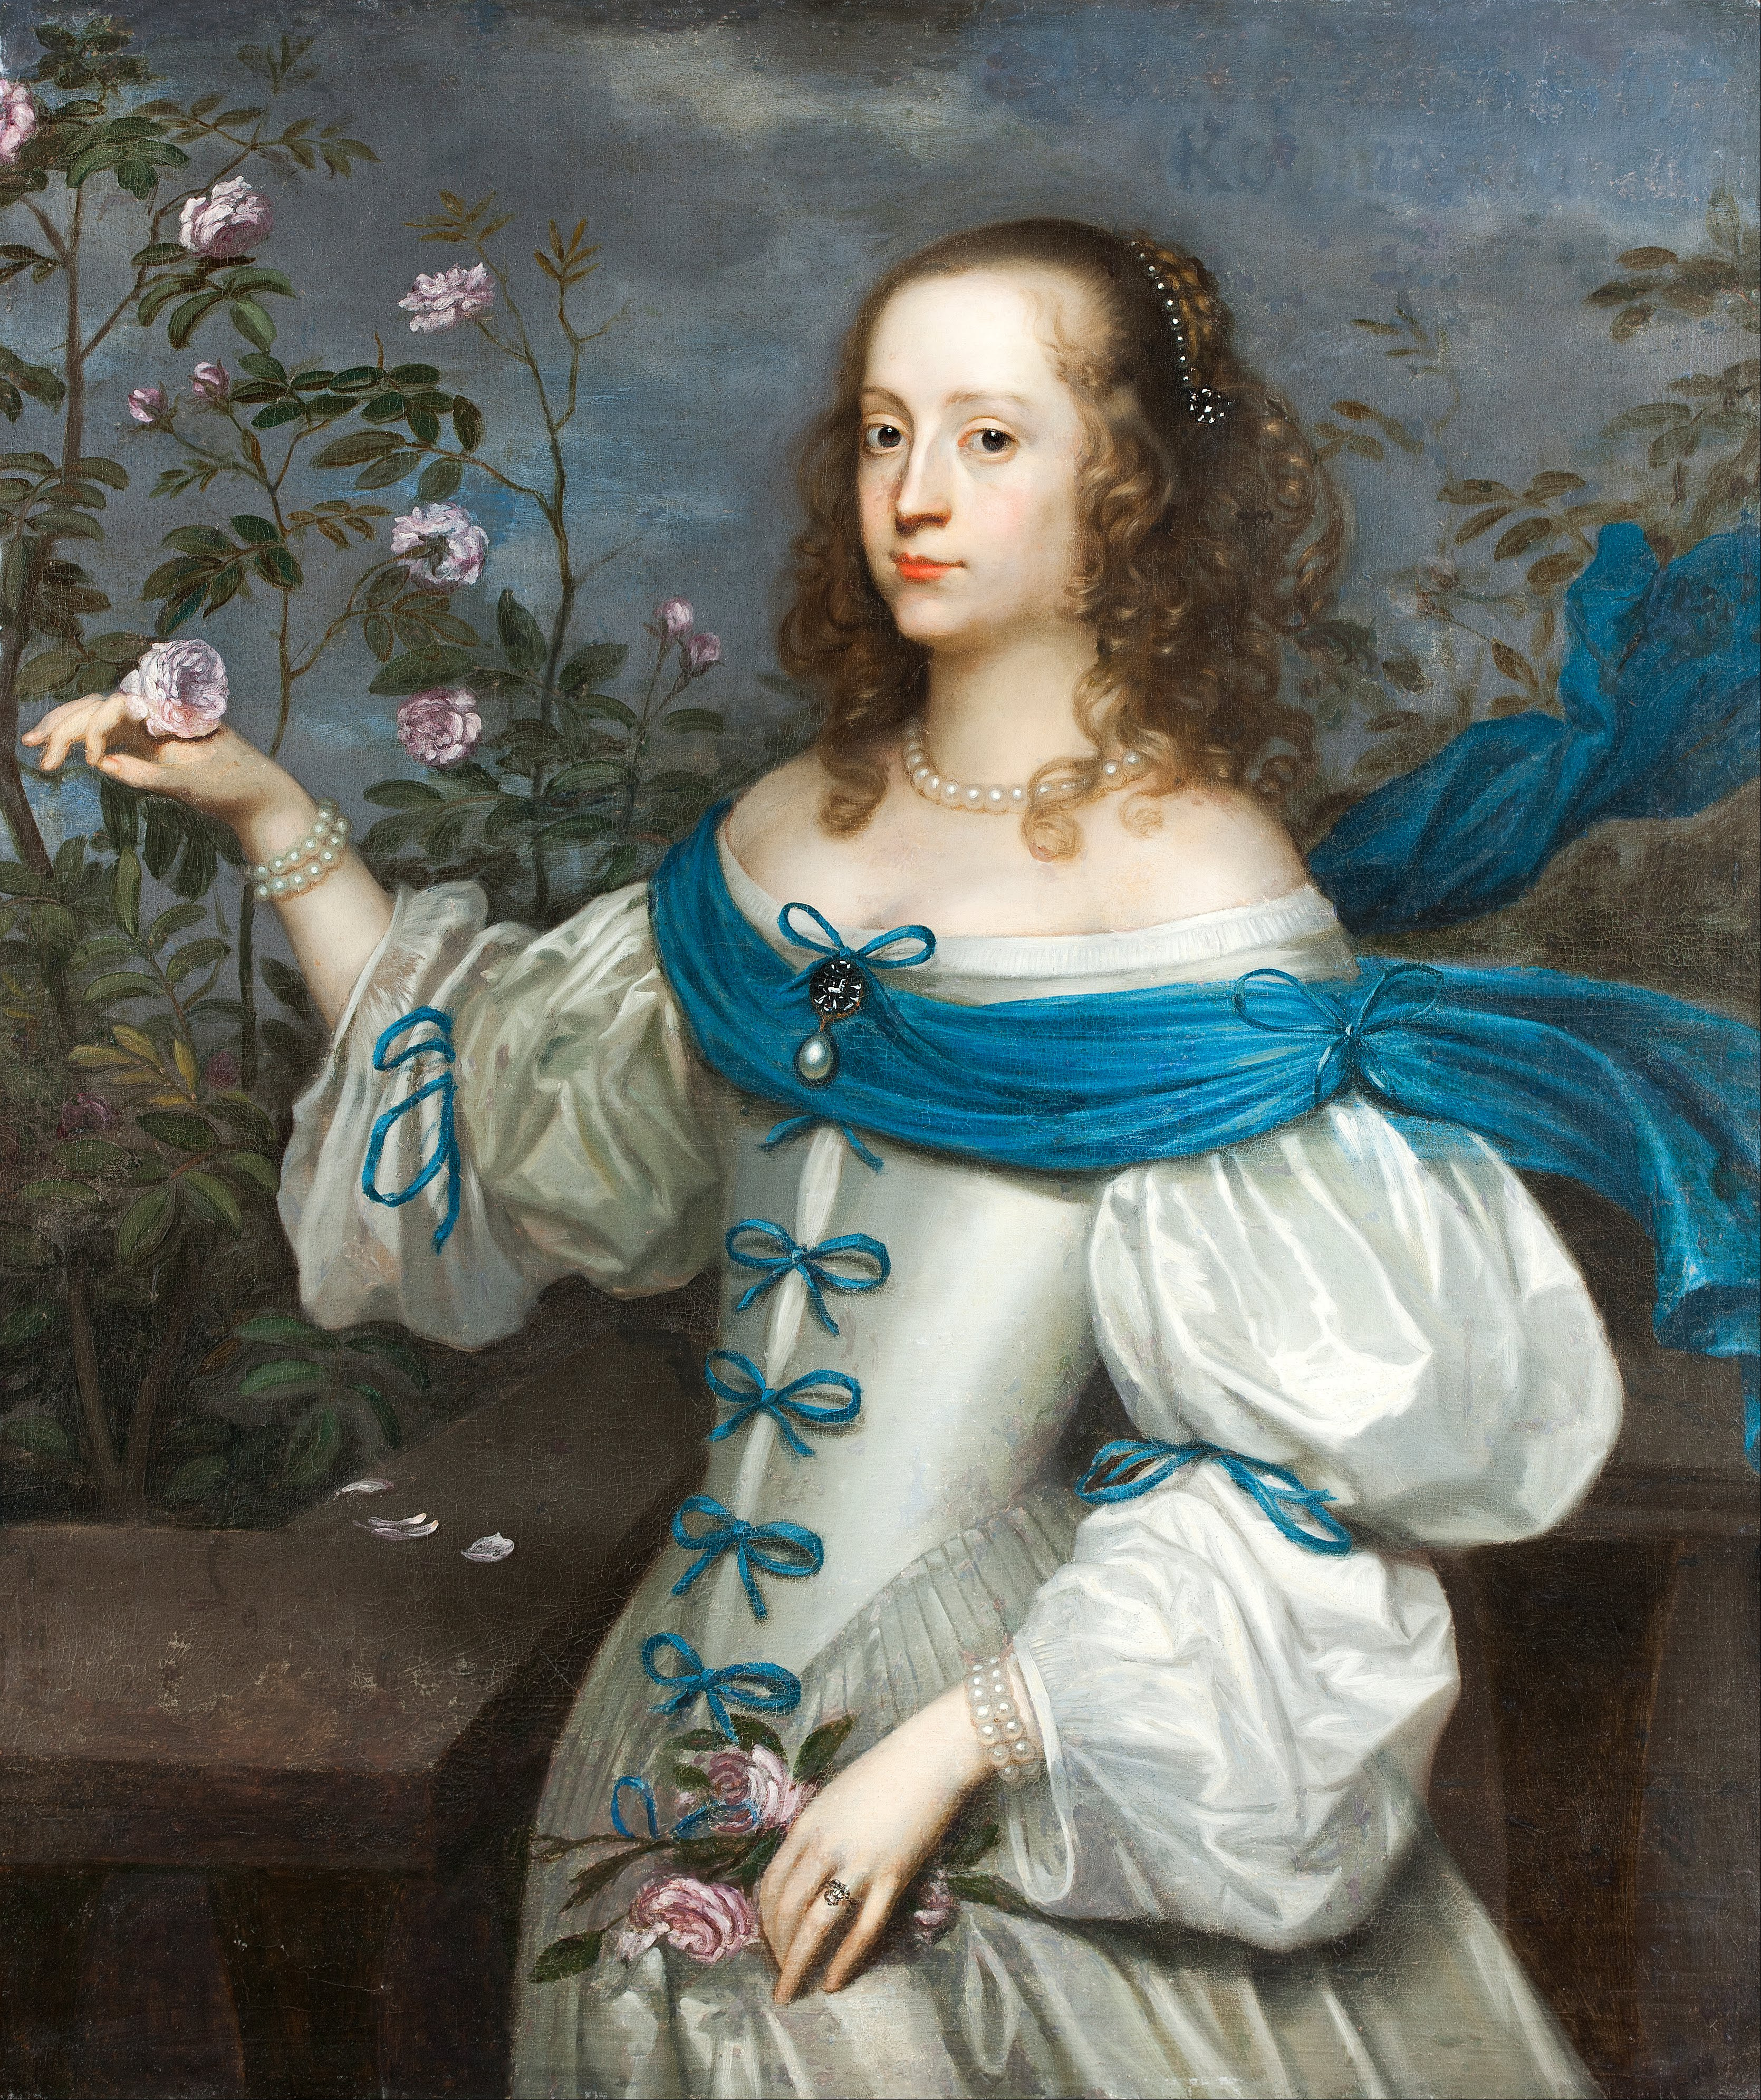 Hendrick Munnichhoven, attributed to - Beata Elisabeth von Königsmarck (1637 – 1723) - Google Art Project